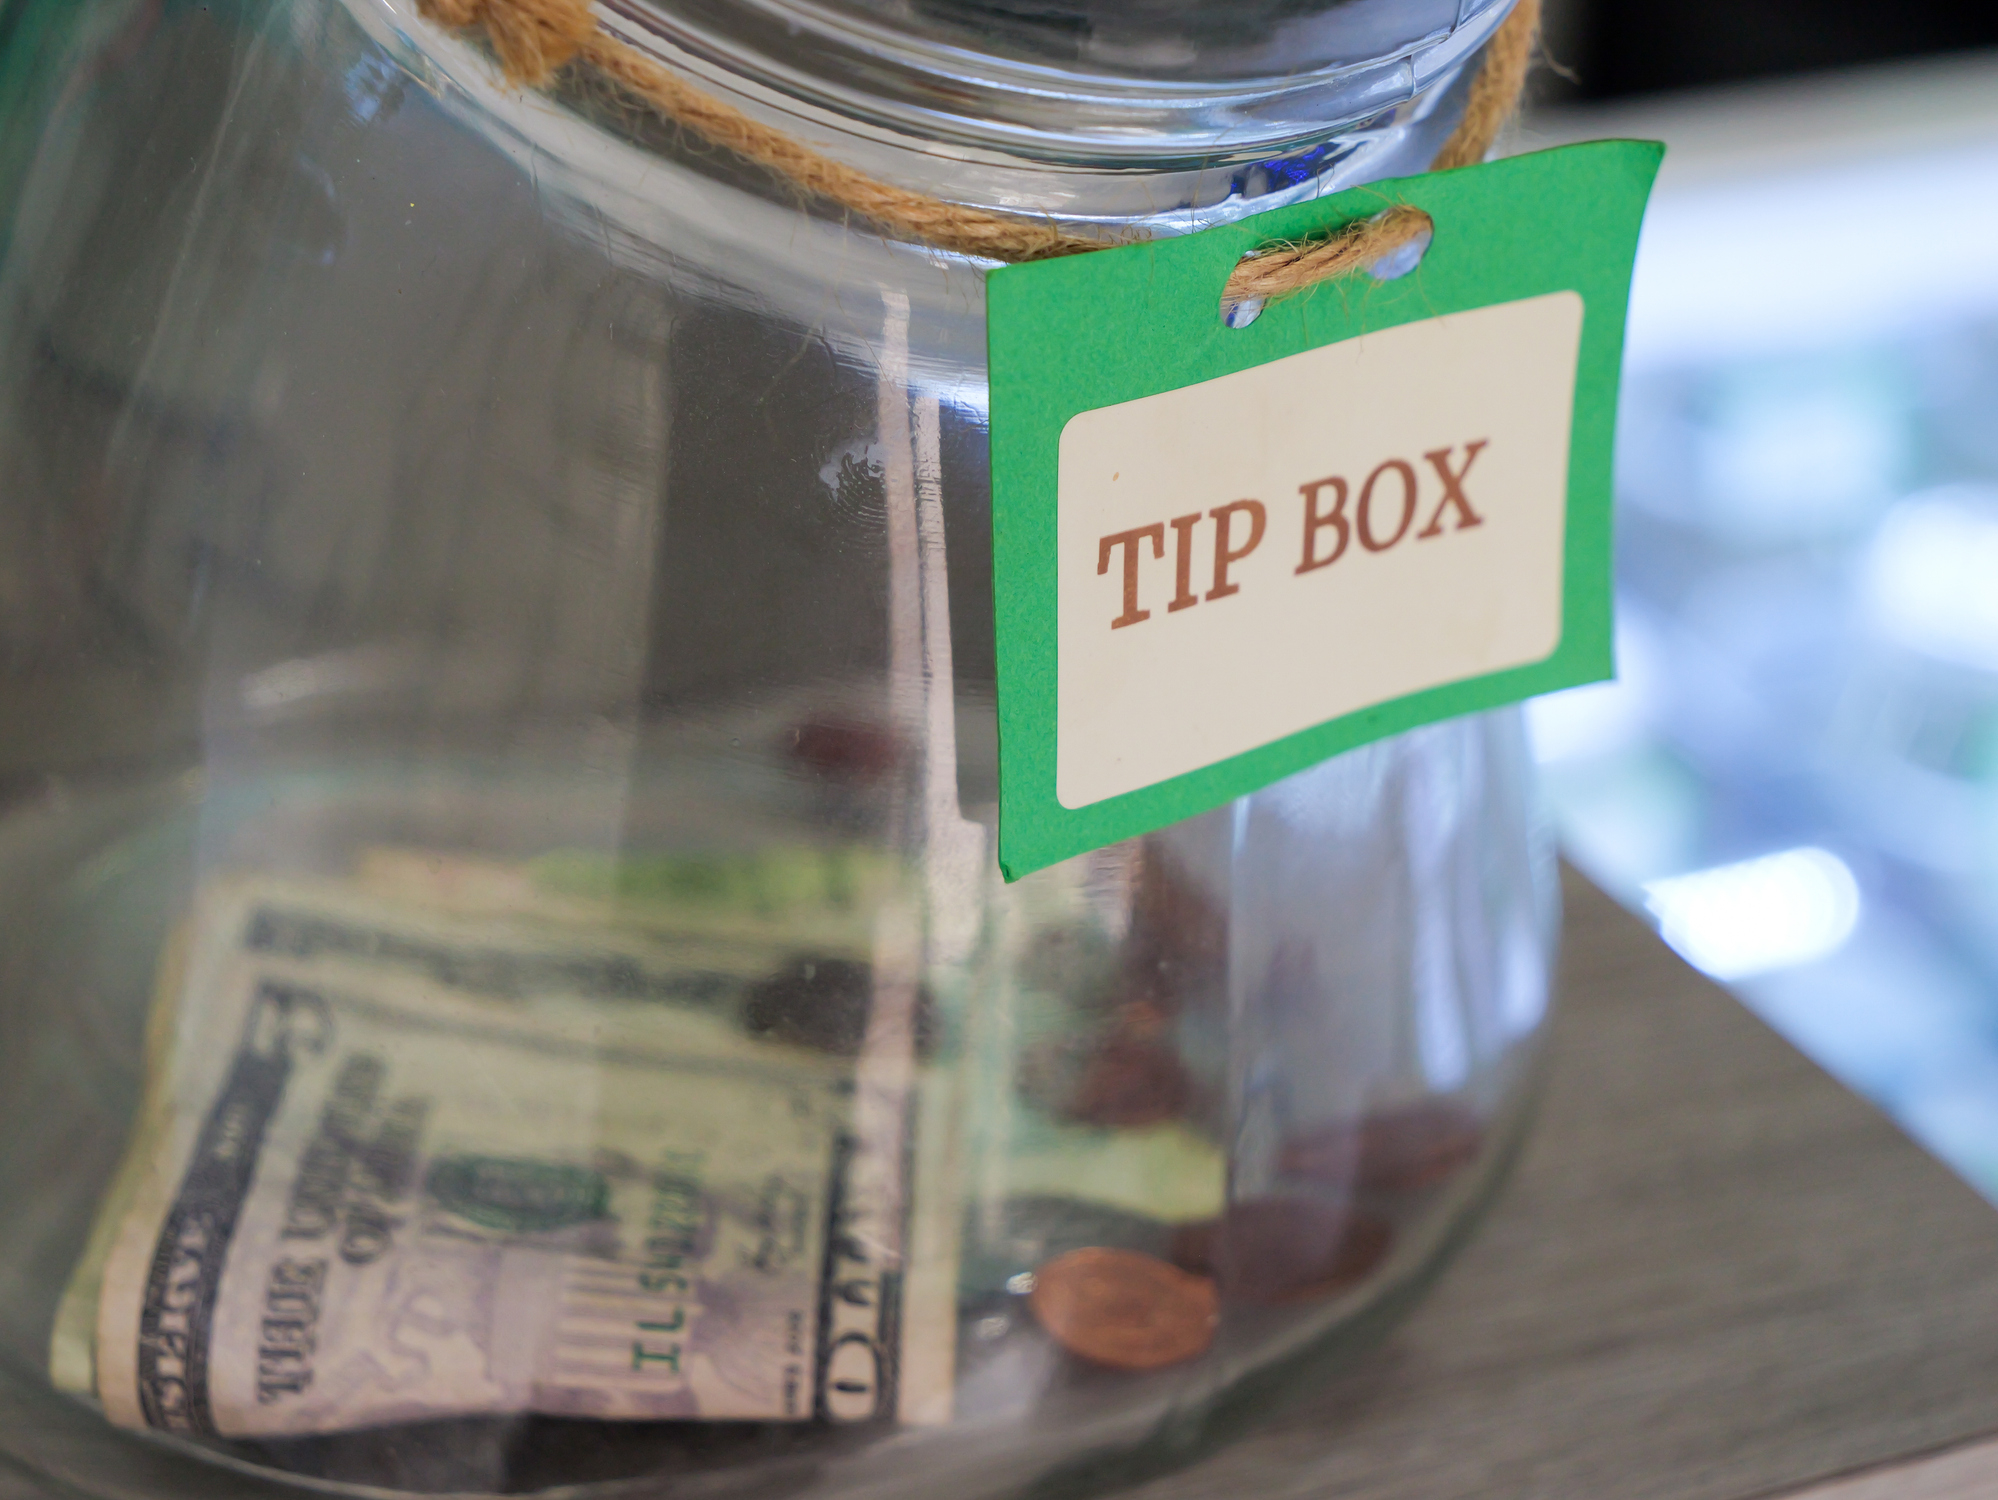 a tip box